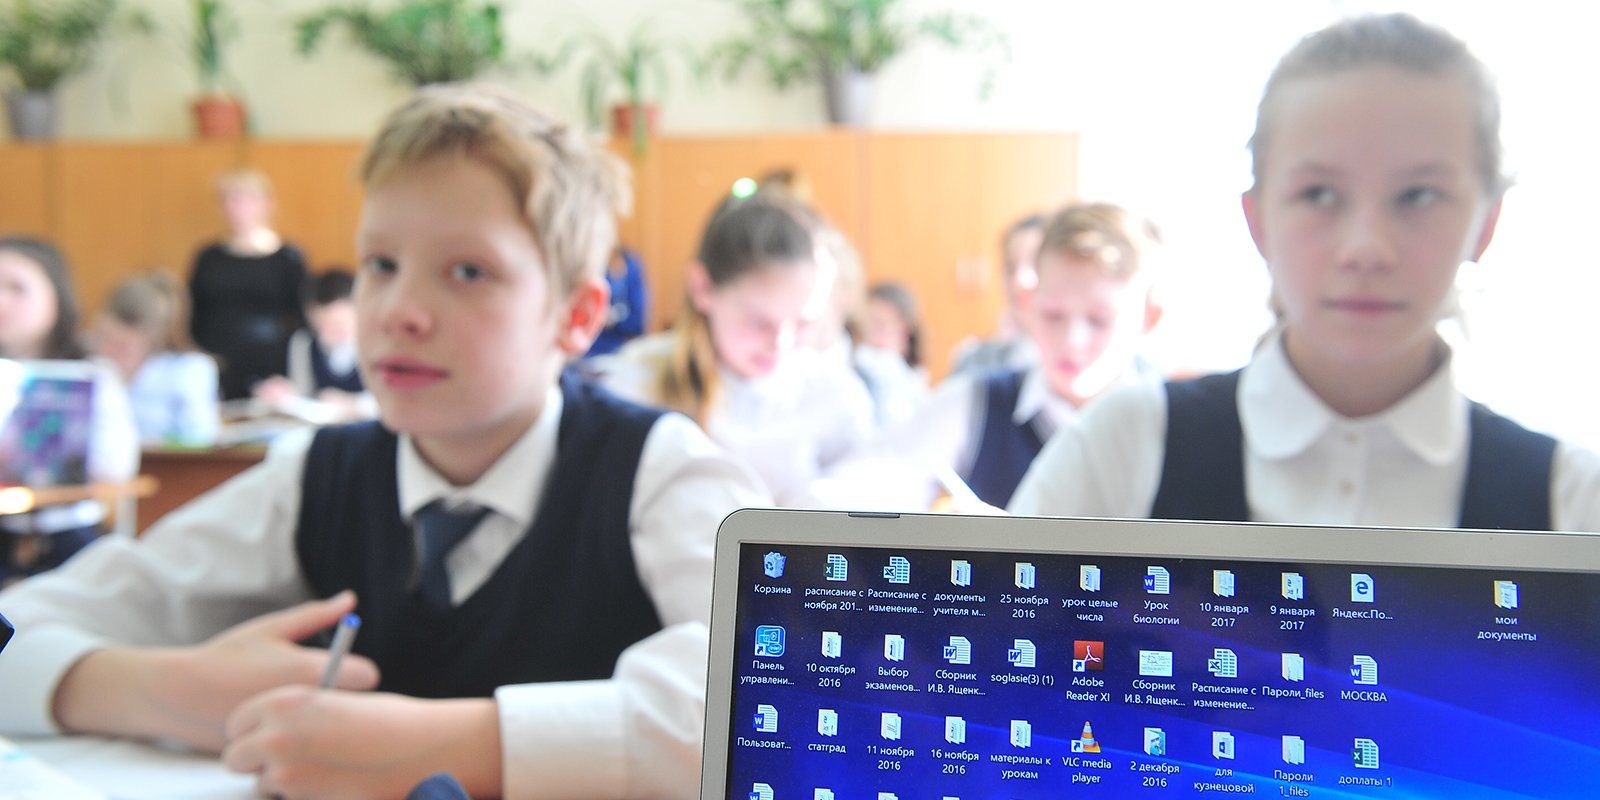 22 тысячи уроков: как получить грант за развитие «Московской электронной школы»